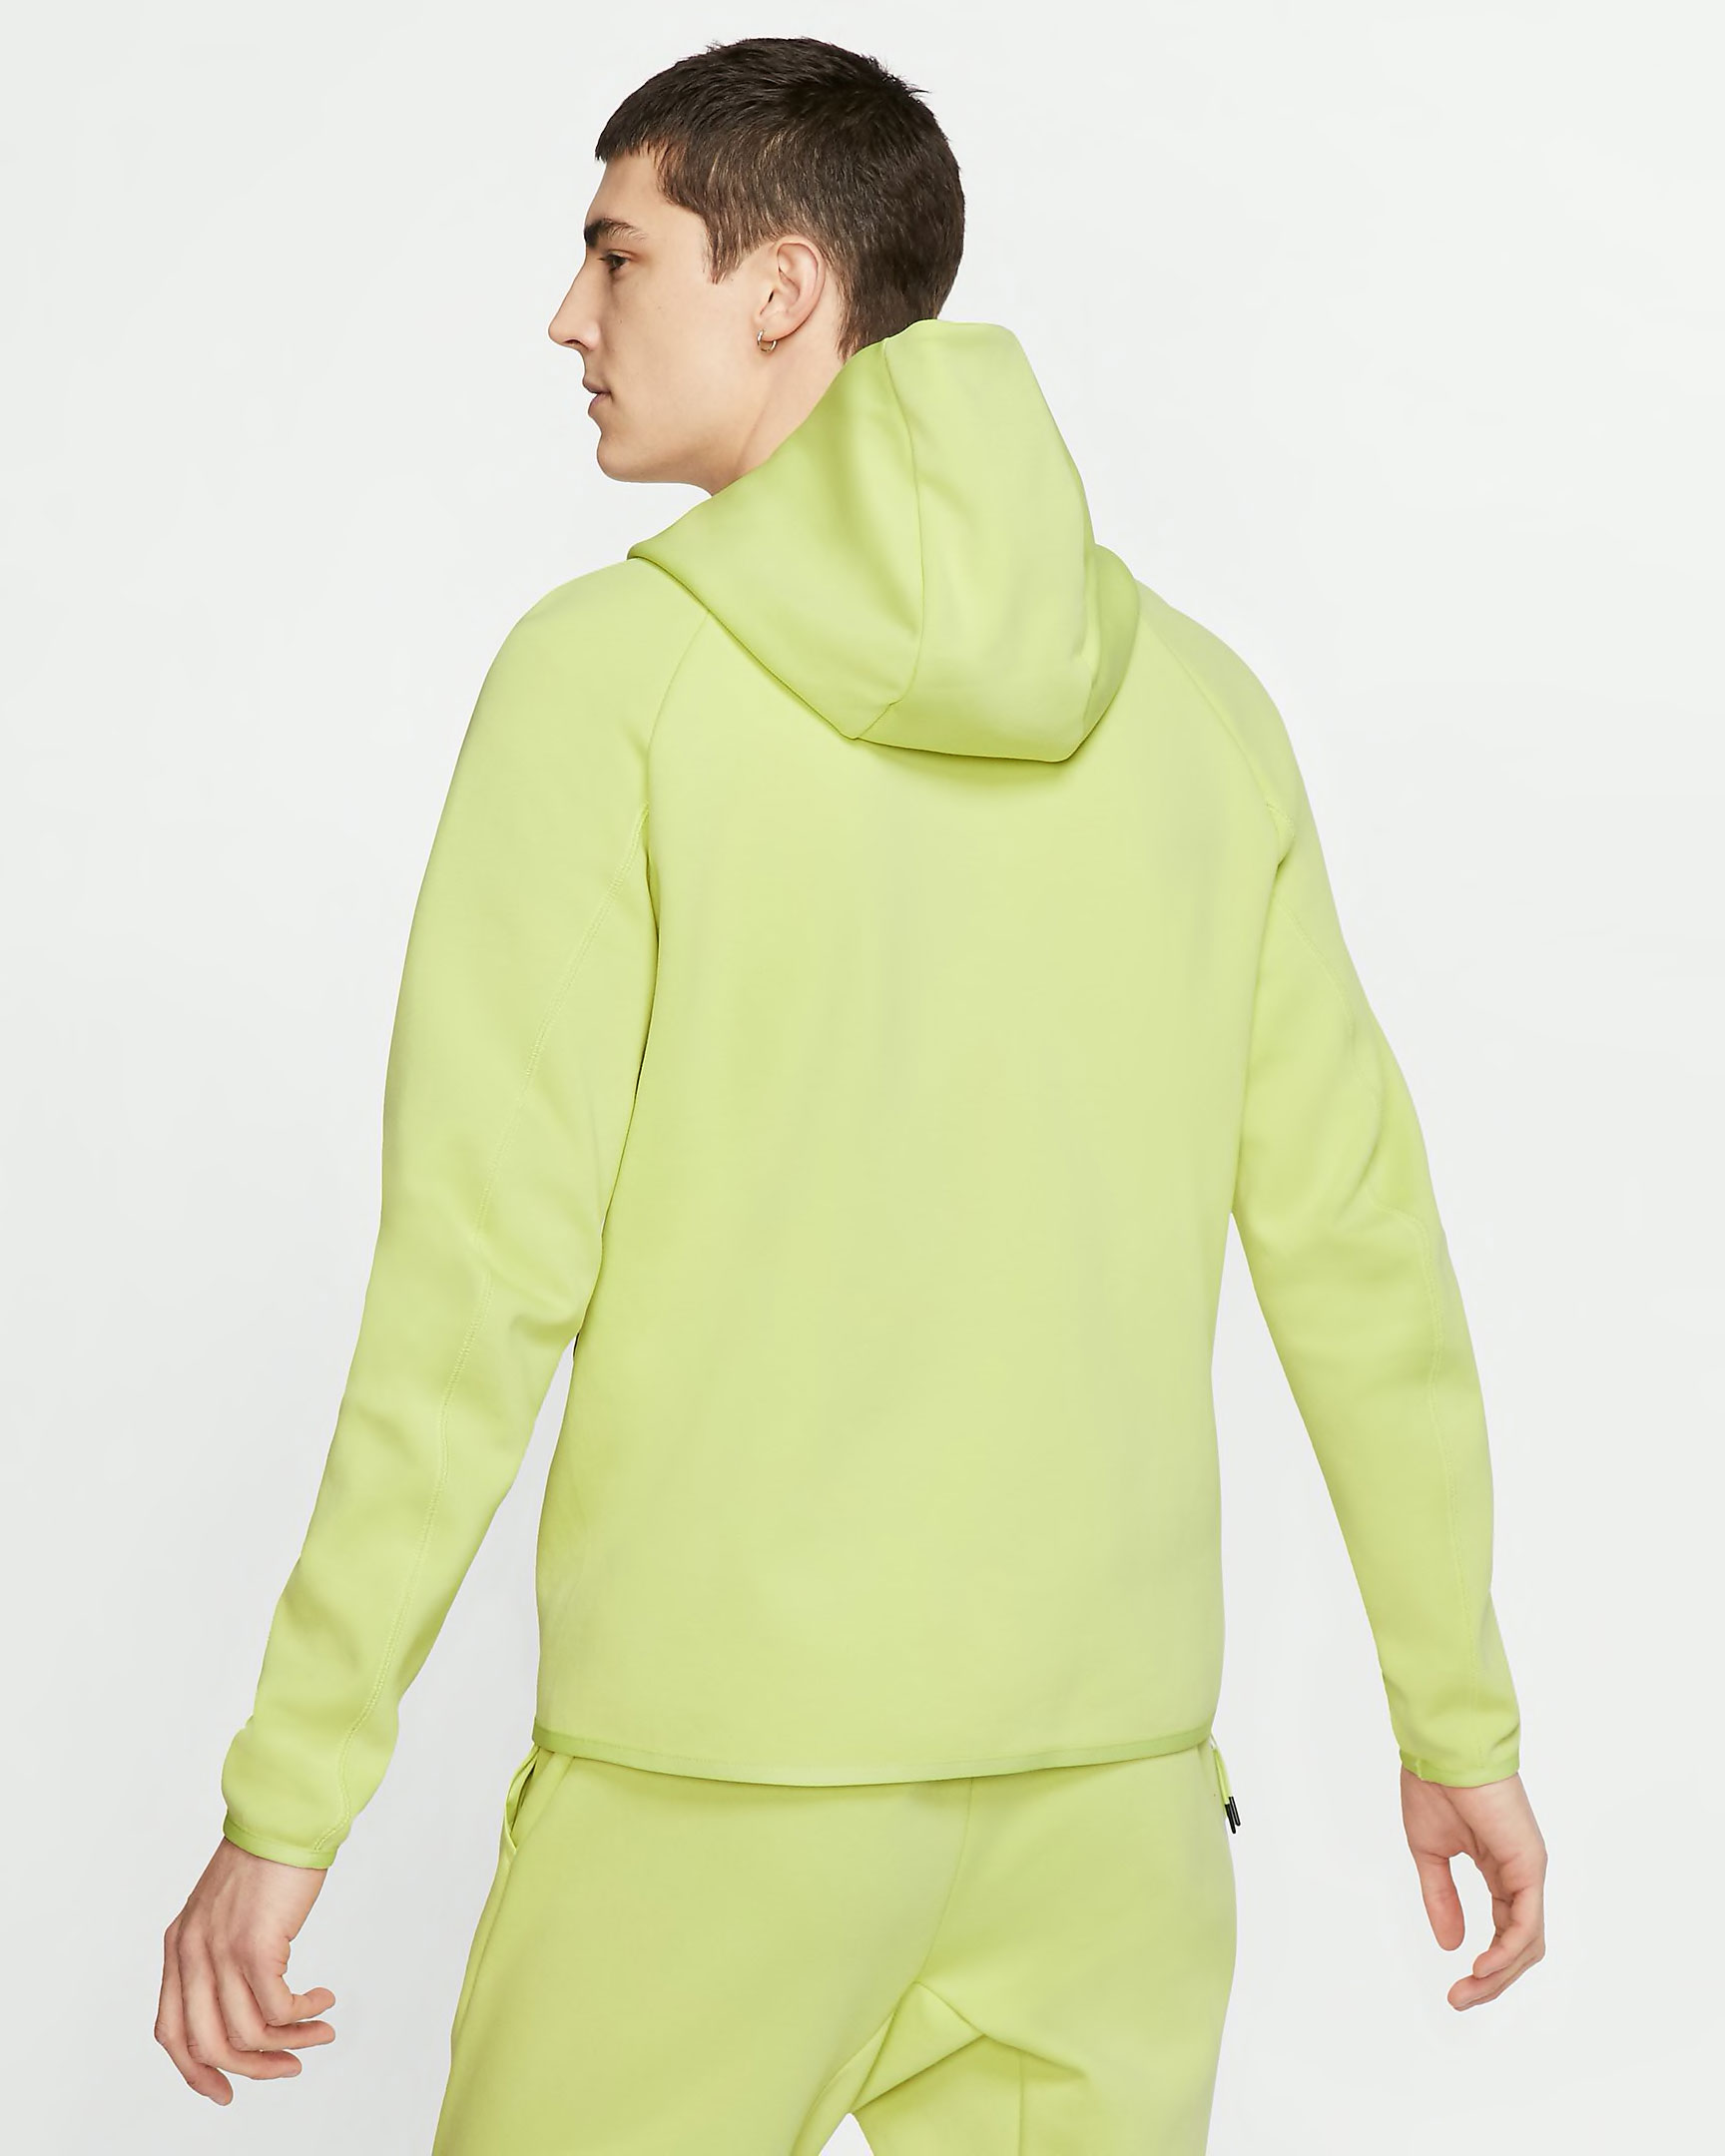 volt green nike hoodie